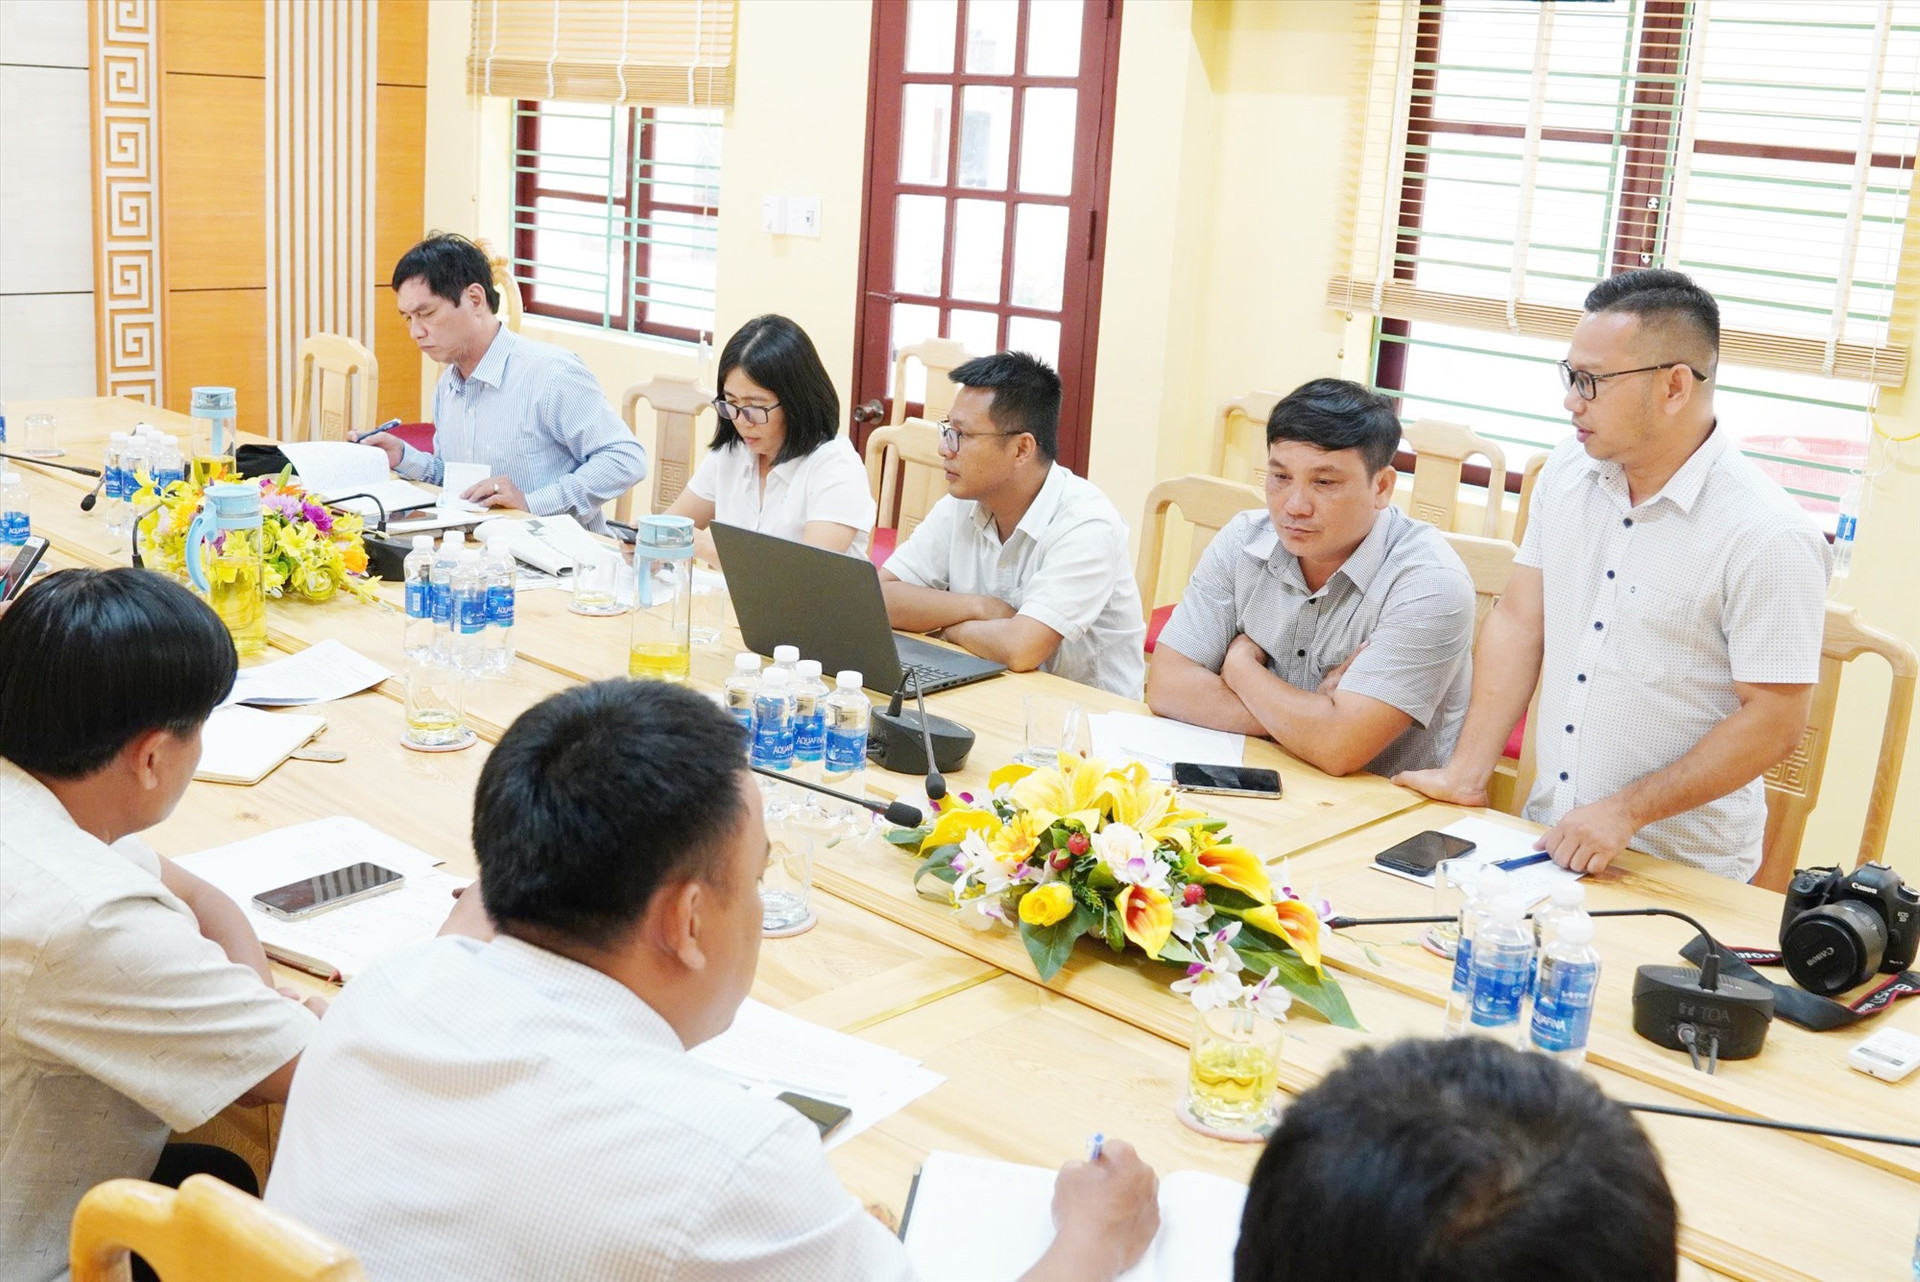 Đoàn công tác của Báo Quảng Nam làm việc với huyện Tây Giang về phát triển nội dung trang địa phương Tây Giang. Ảnh: A.NGƯỚC